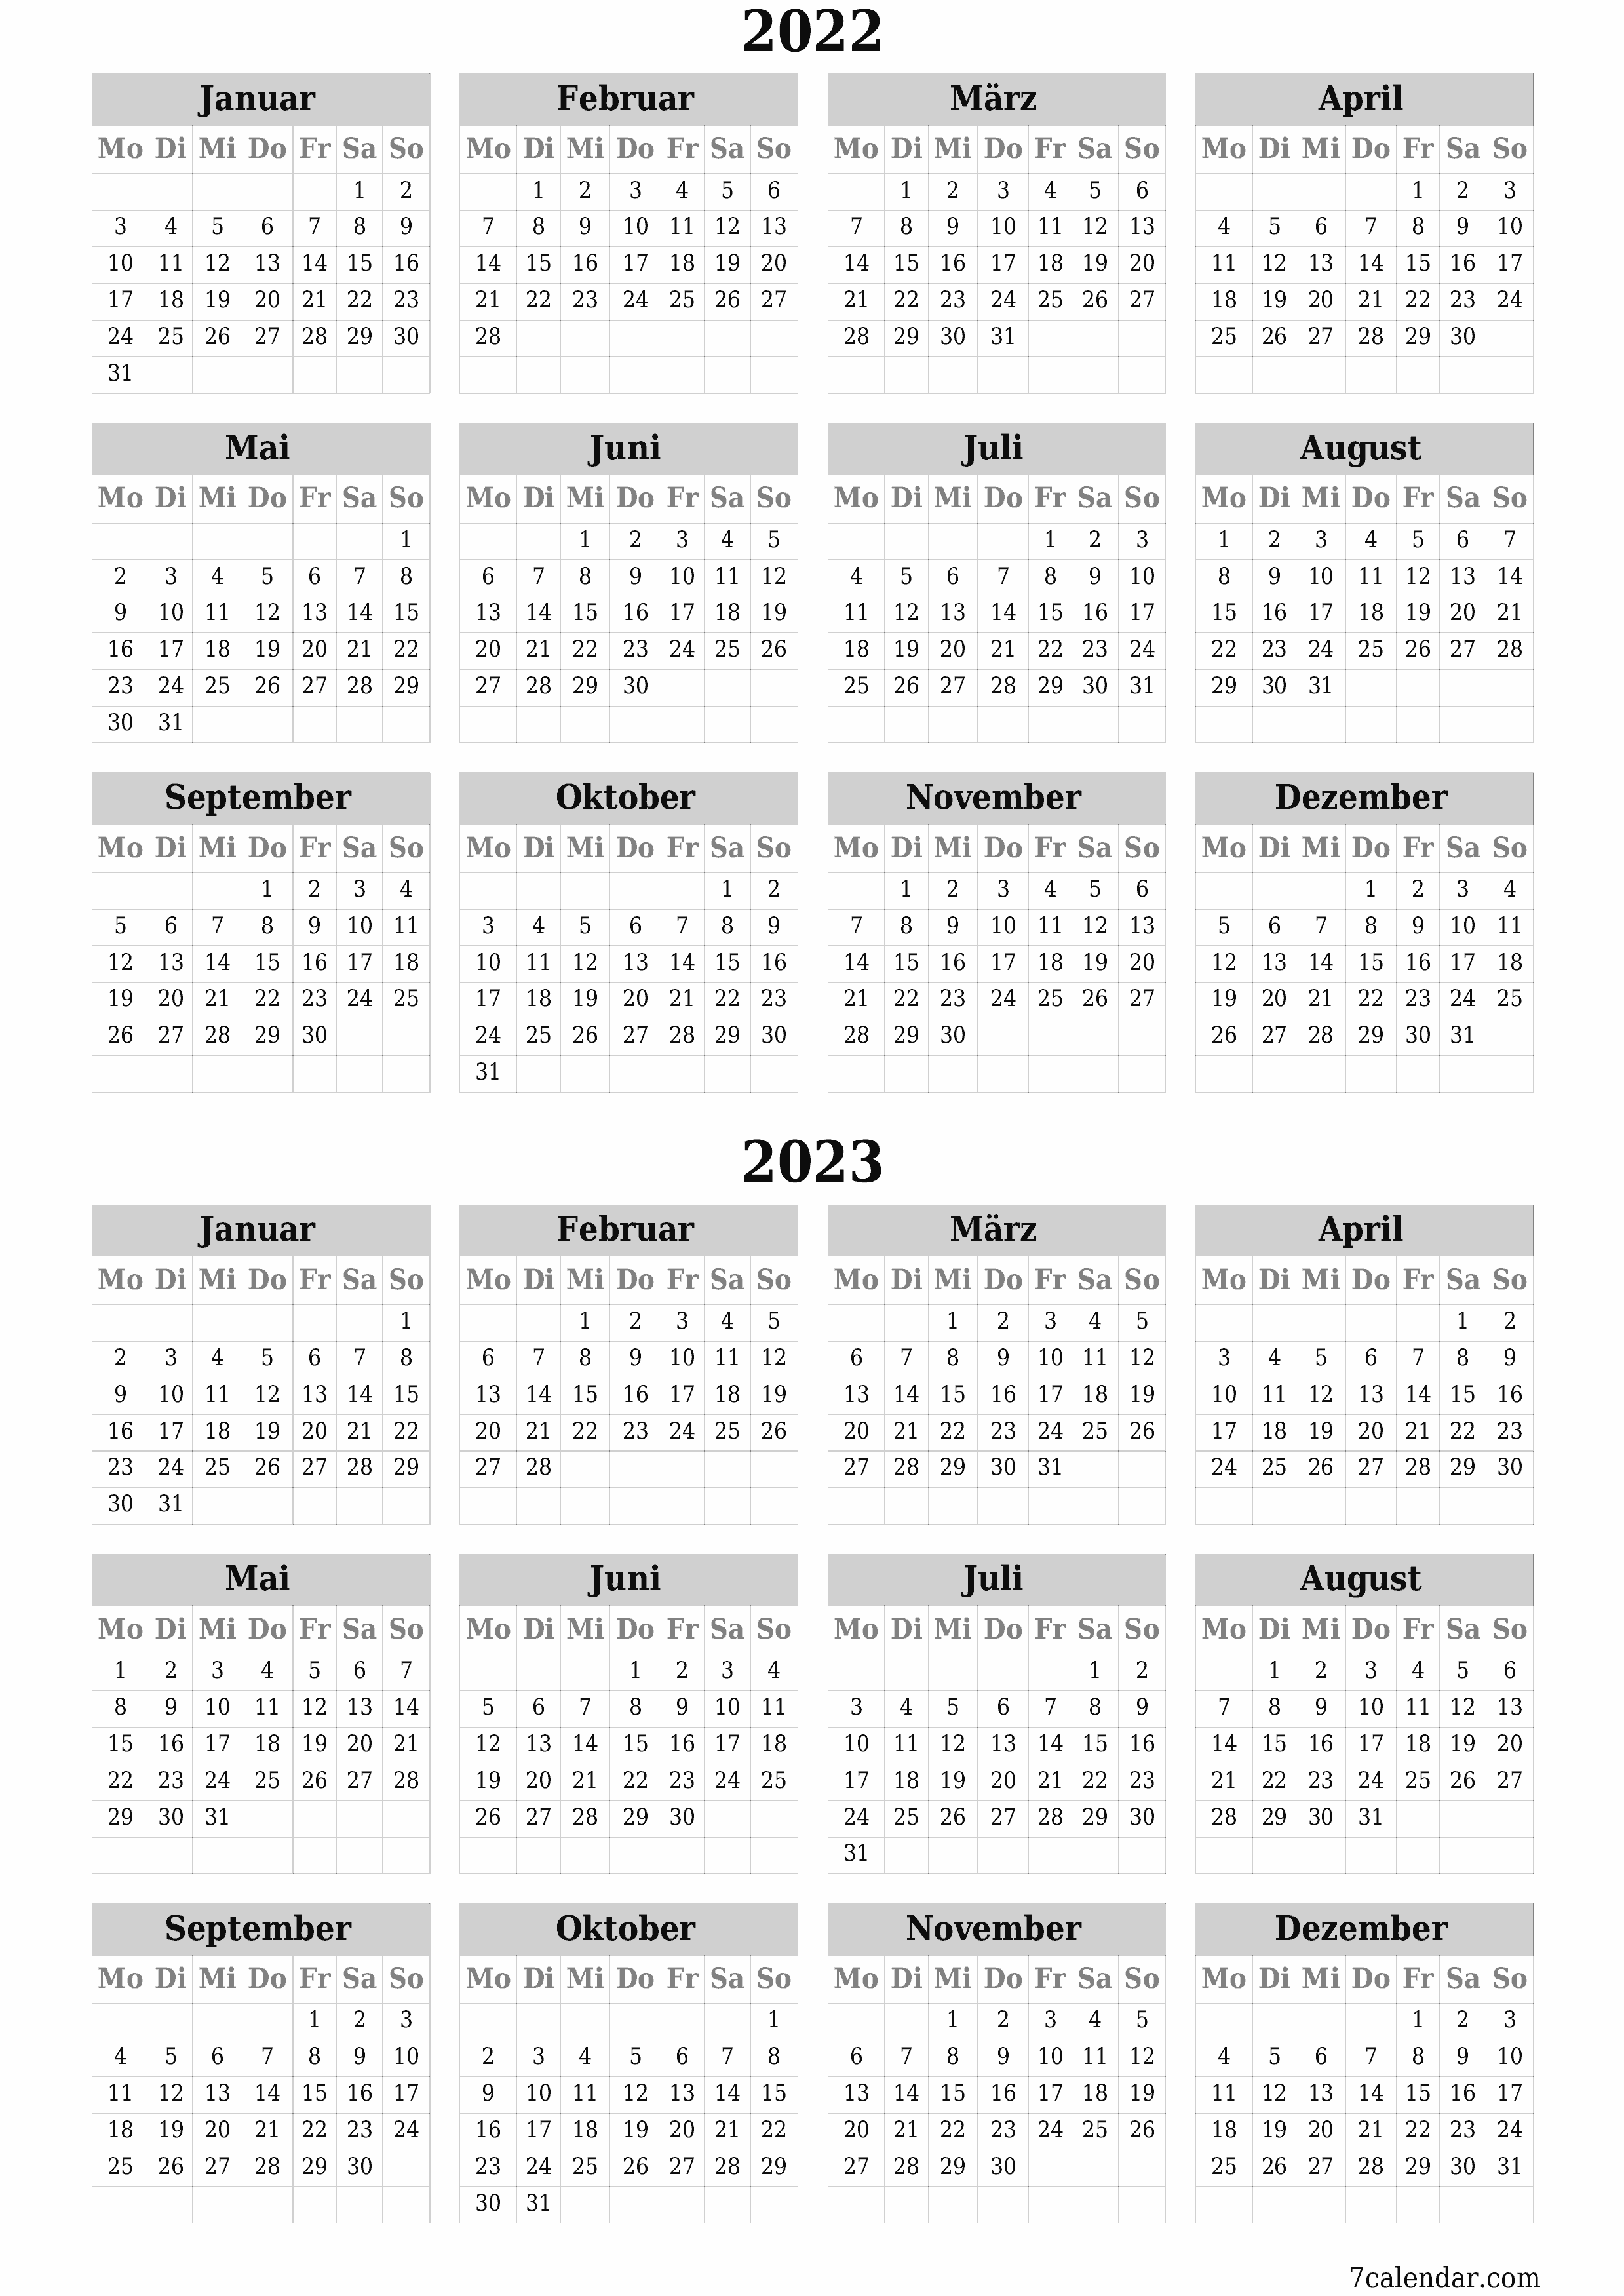 Jahresplanerkalender für das Jahr 2022, 2023 mit Notizen leeren, speichern und als PDF PNG German - 7calendar.com drucken